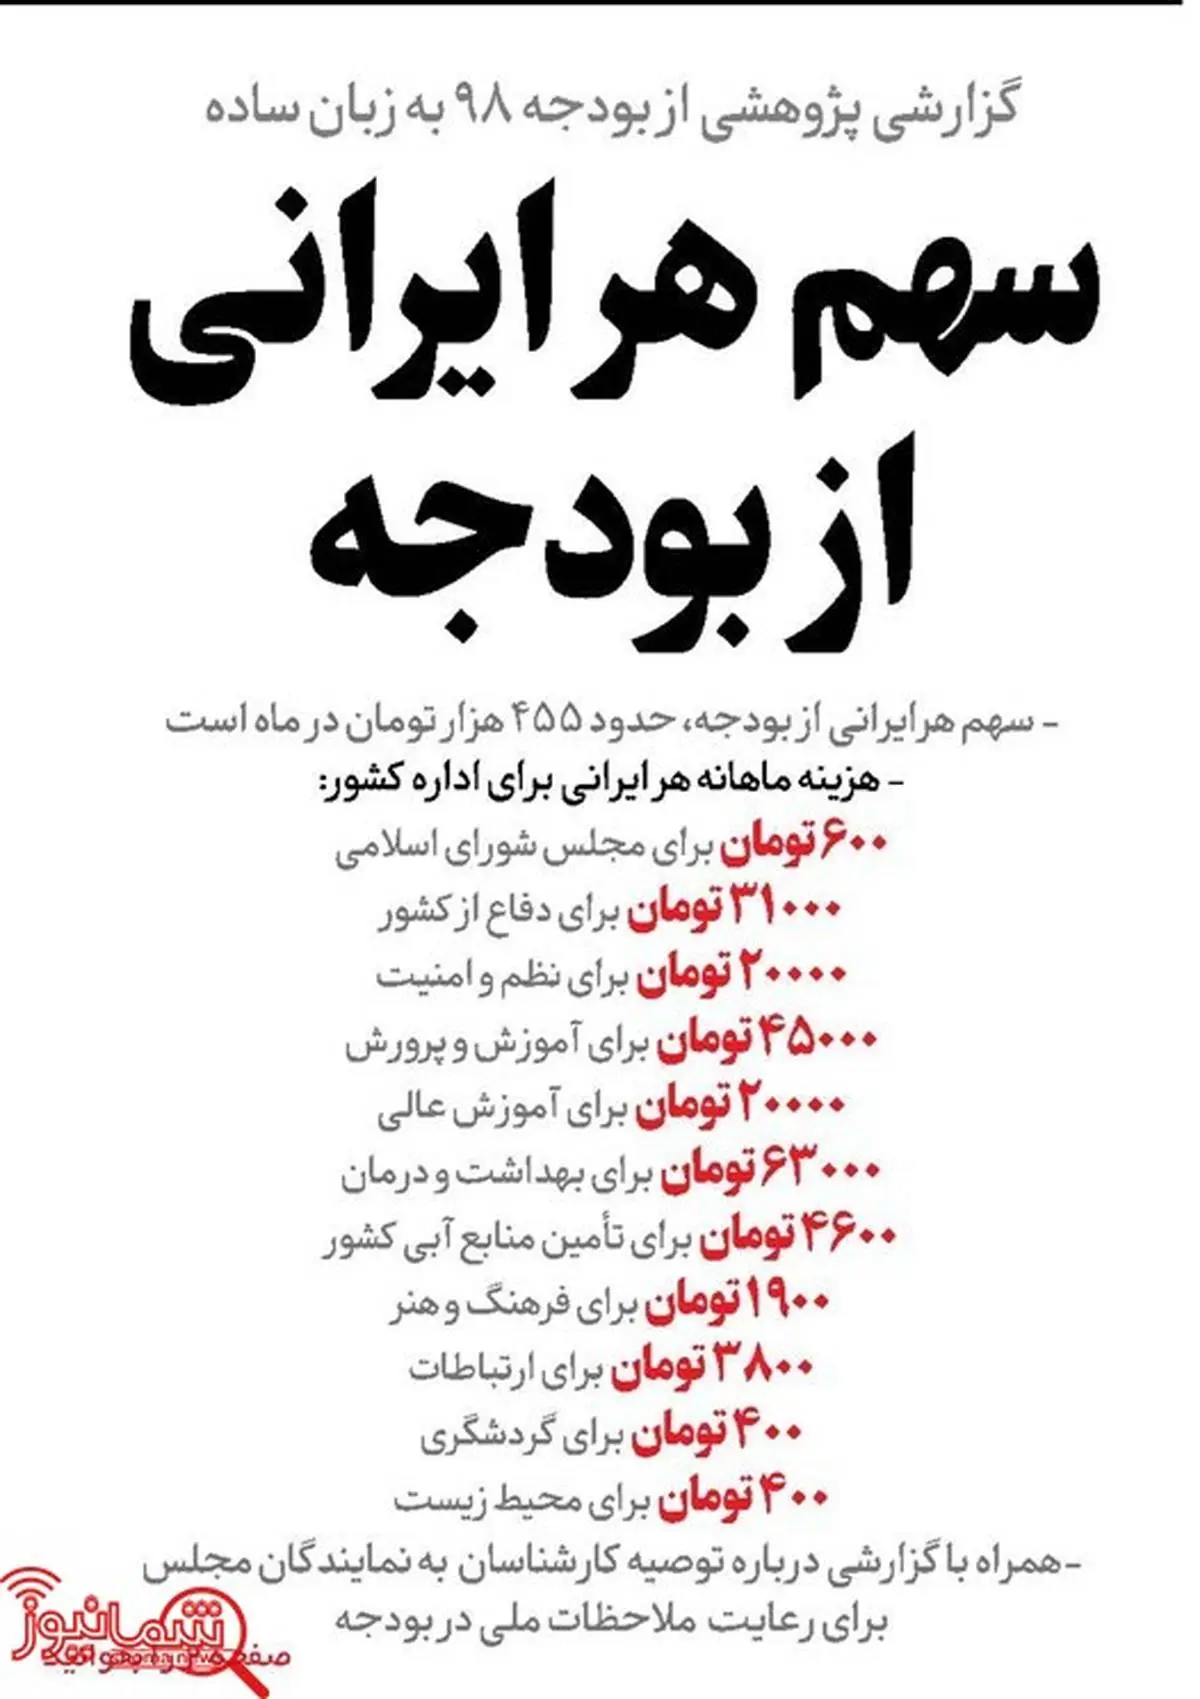 سهم هر ایرانی از بودجه